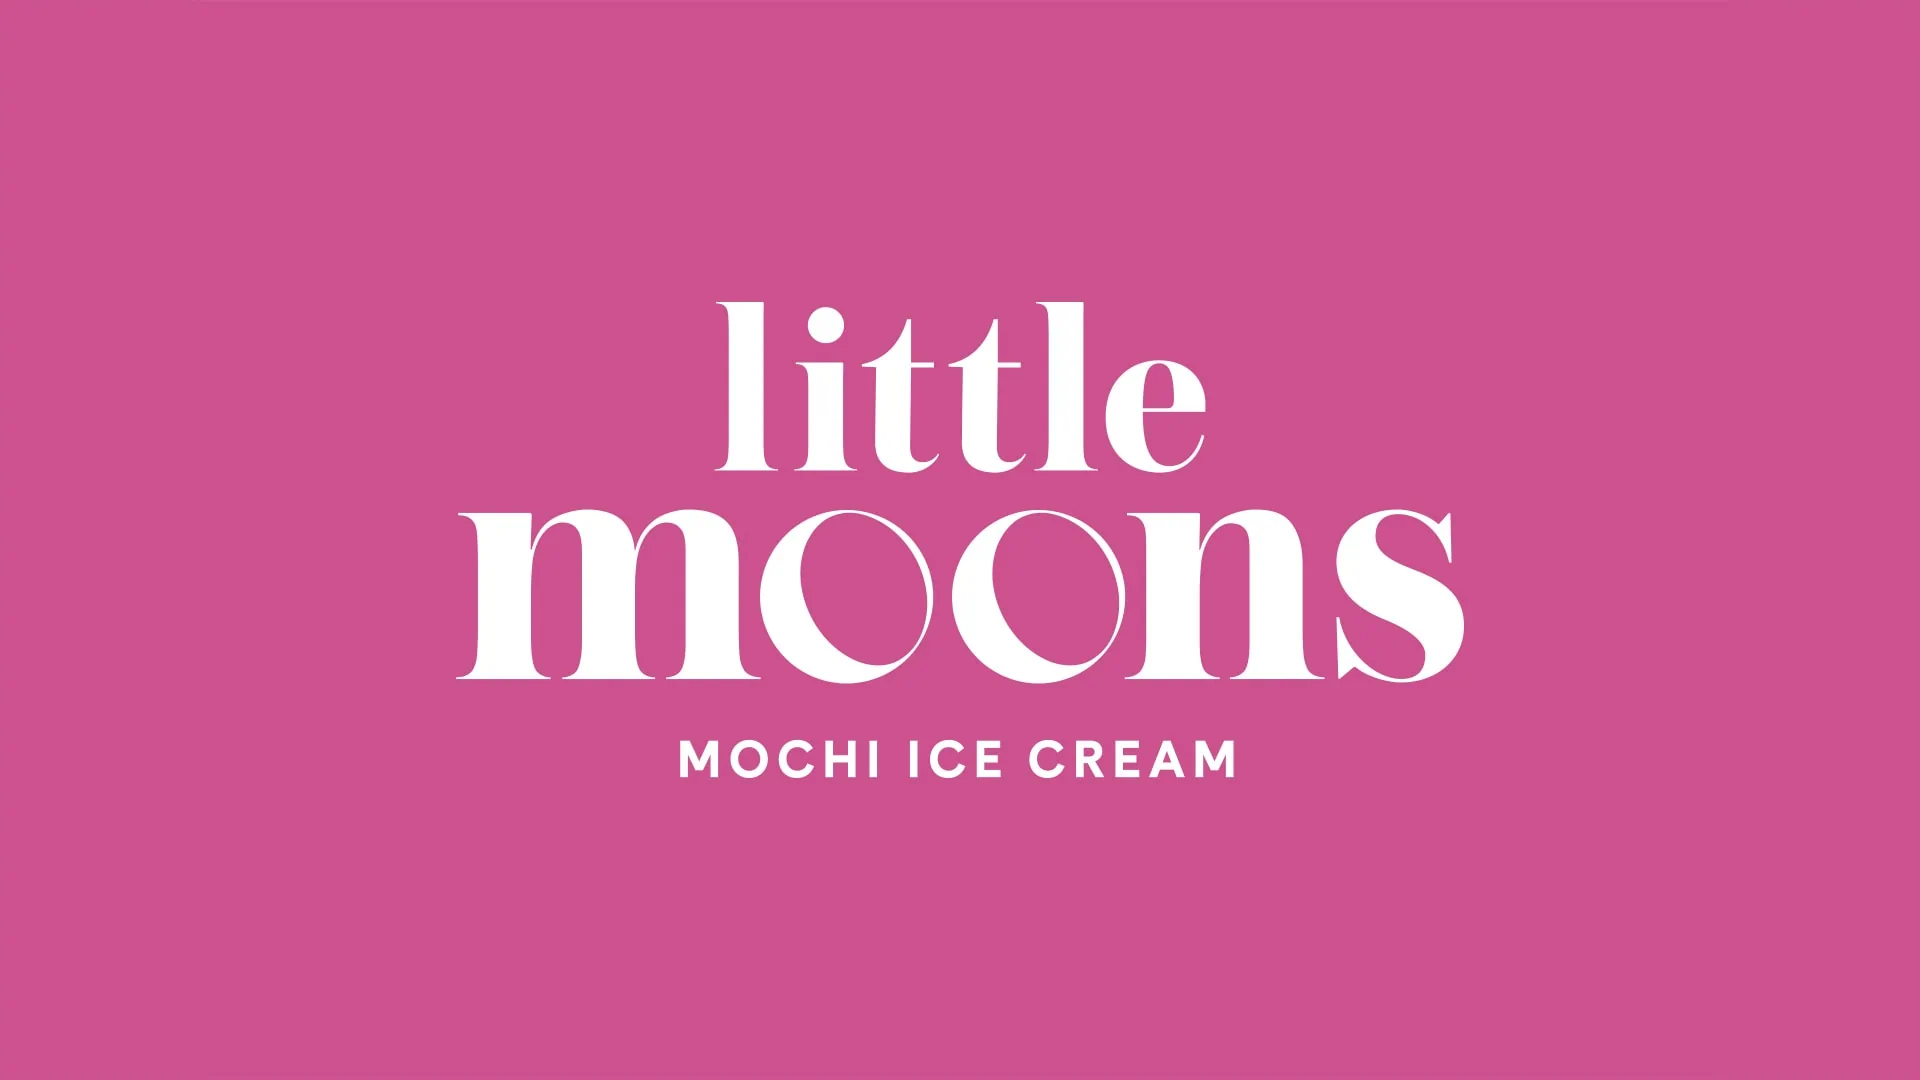 branding-packaging-design-little-moons-latte-logo